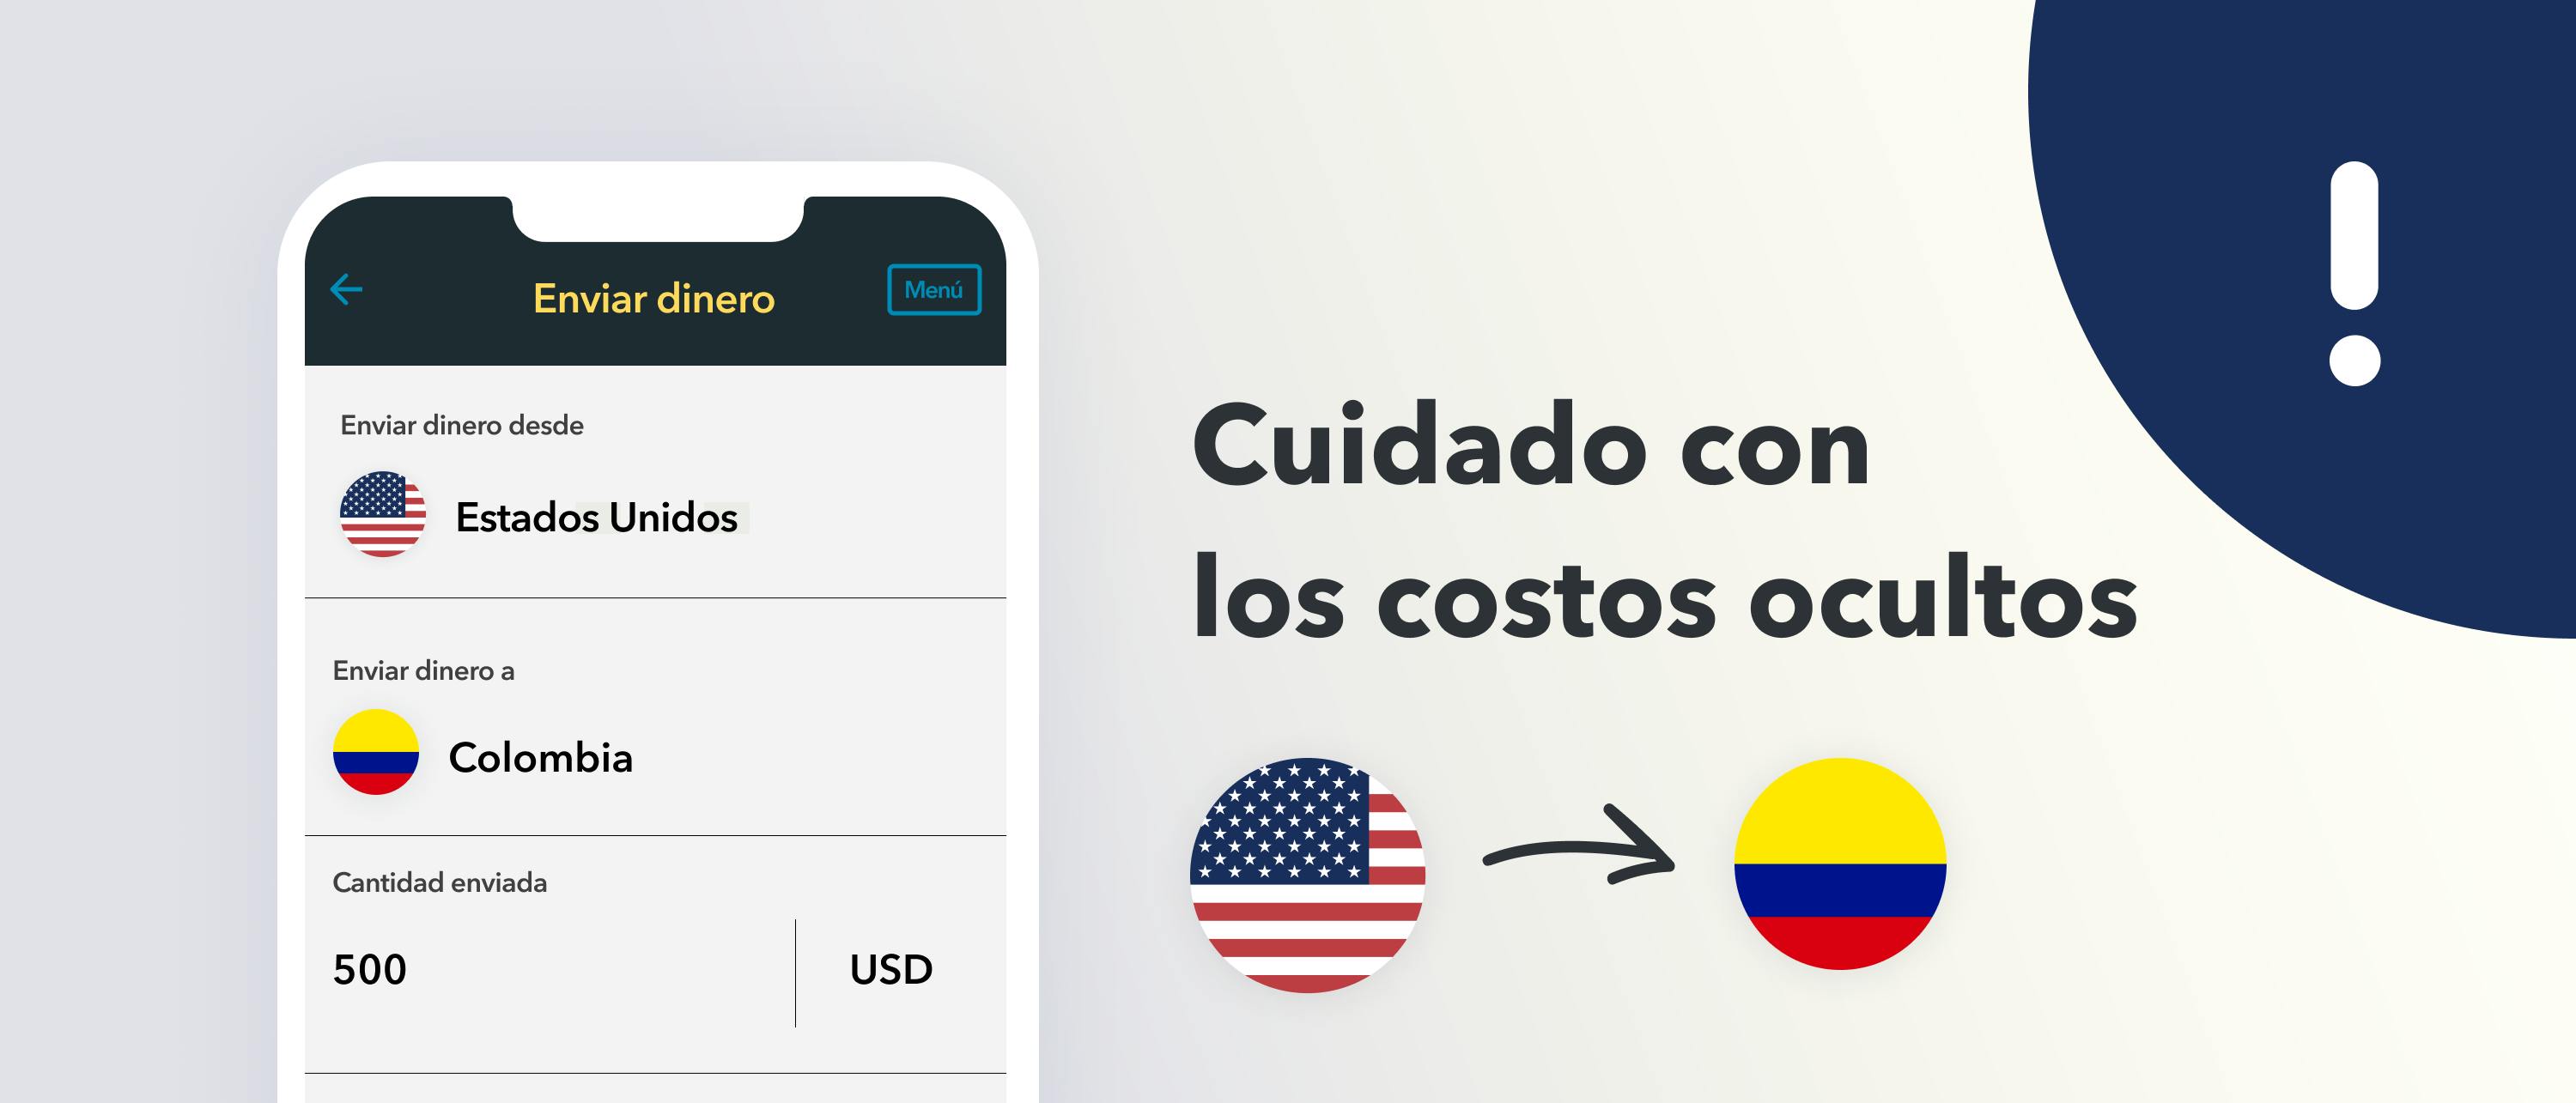 6 Mejores Formas De Enviar Dinero A Colombia Desde Usa 1348